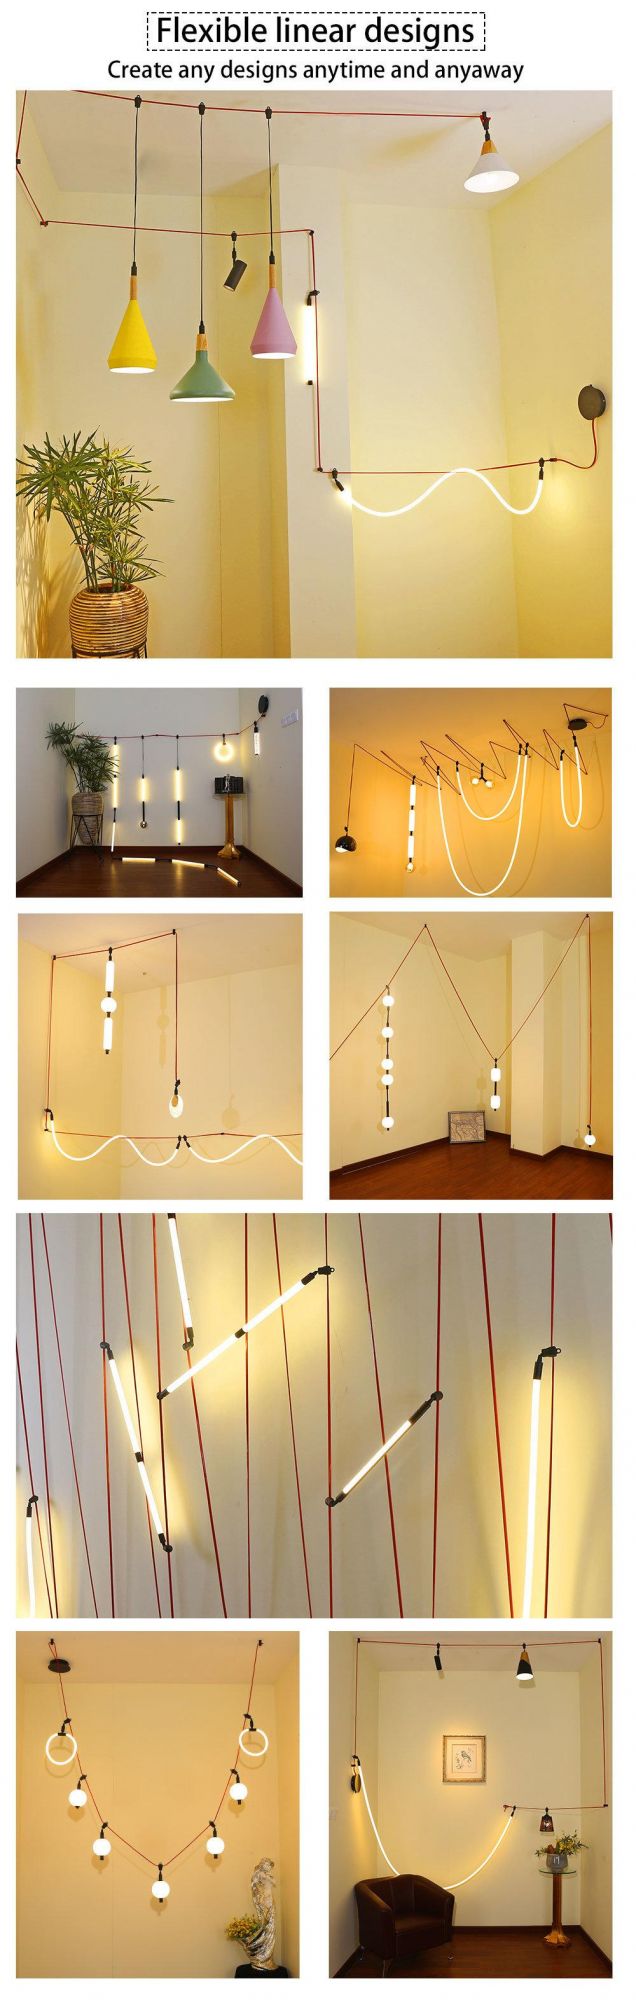 LED Indoor Designer Flexible Linear Lighting Easy Install 3000K/6000K Glass Acrylic Shade Decoration Chandelier Pendant Ceiling Spot Track Lamp Light